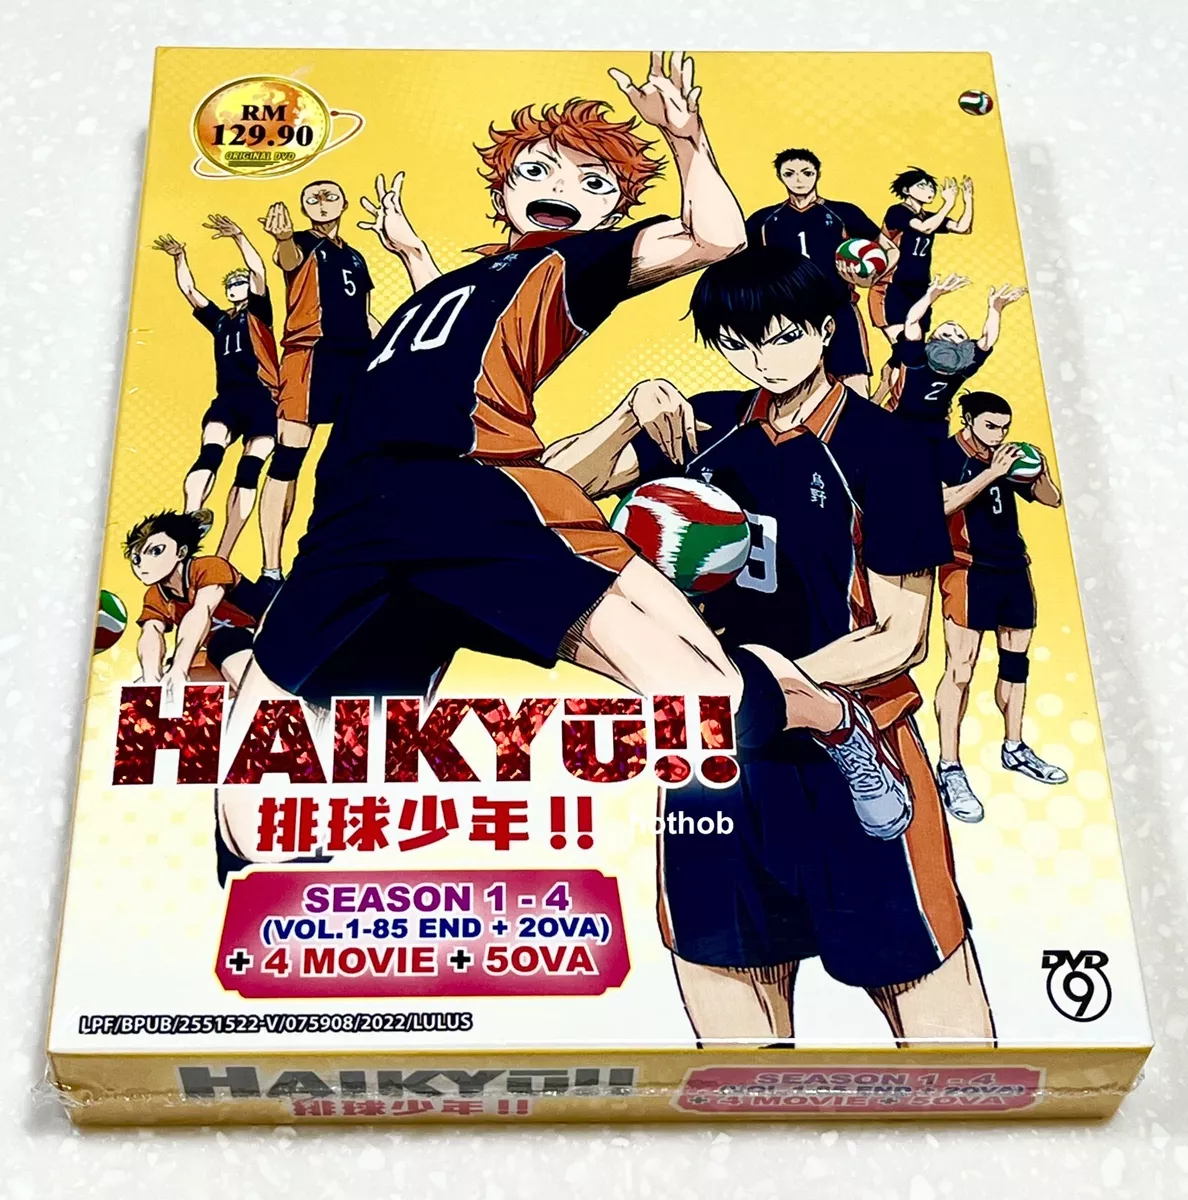 DVD Haikyu!! Season 1-4 Vol.1-85 End (English Dub) + 4 Movies + 5